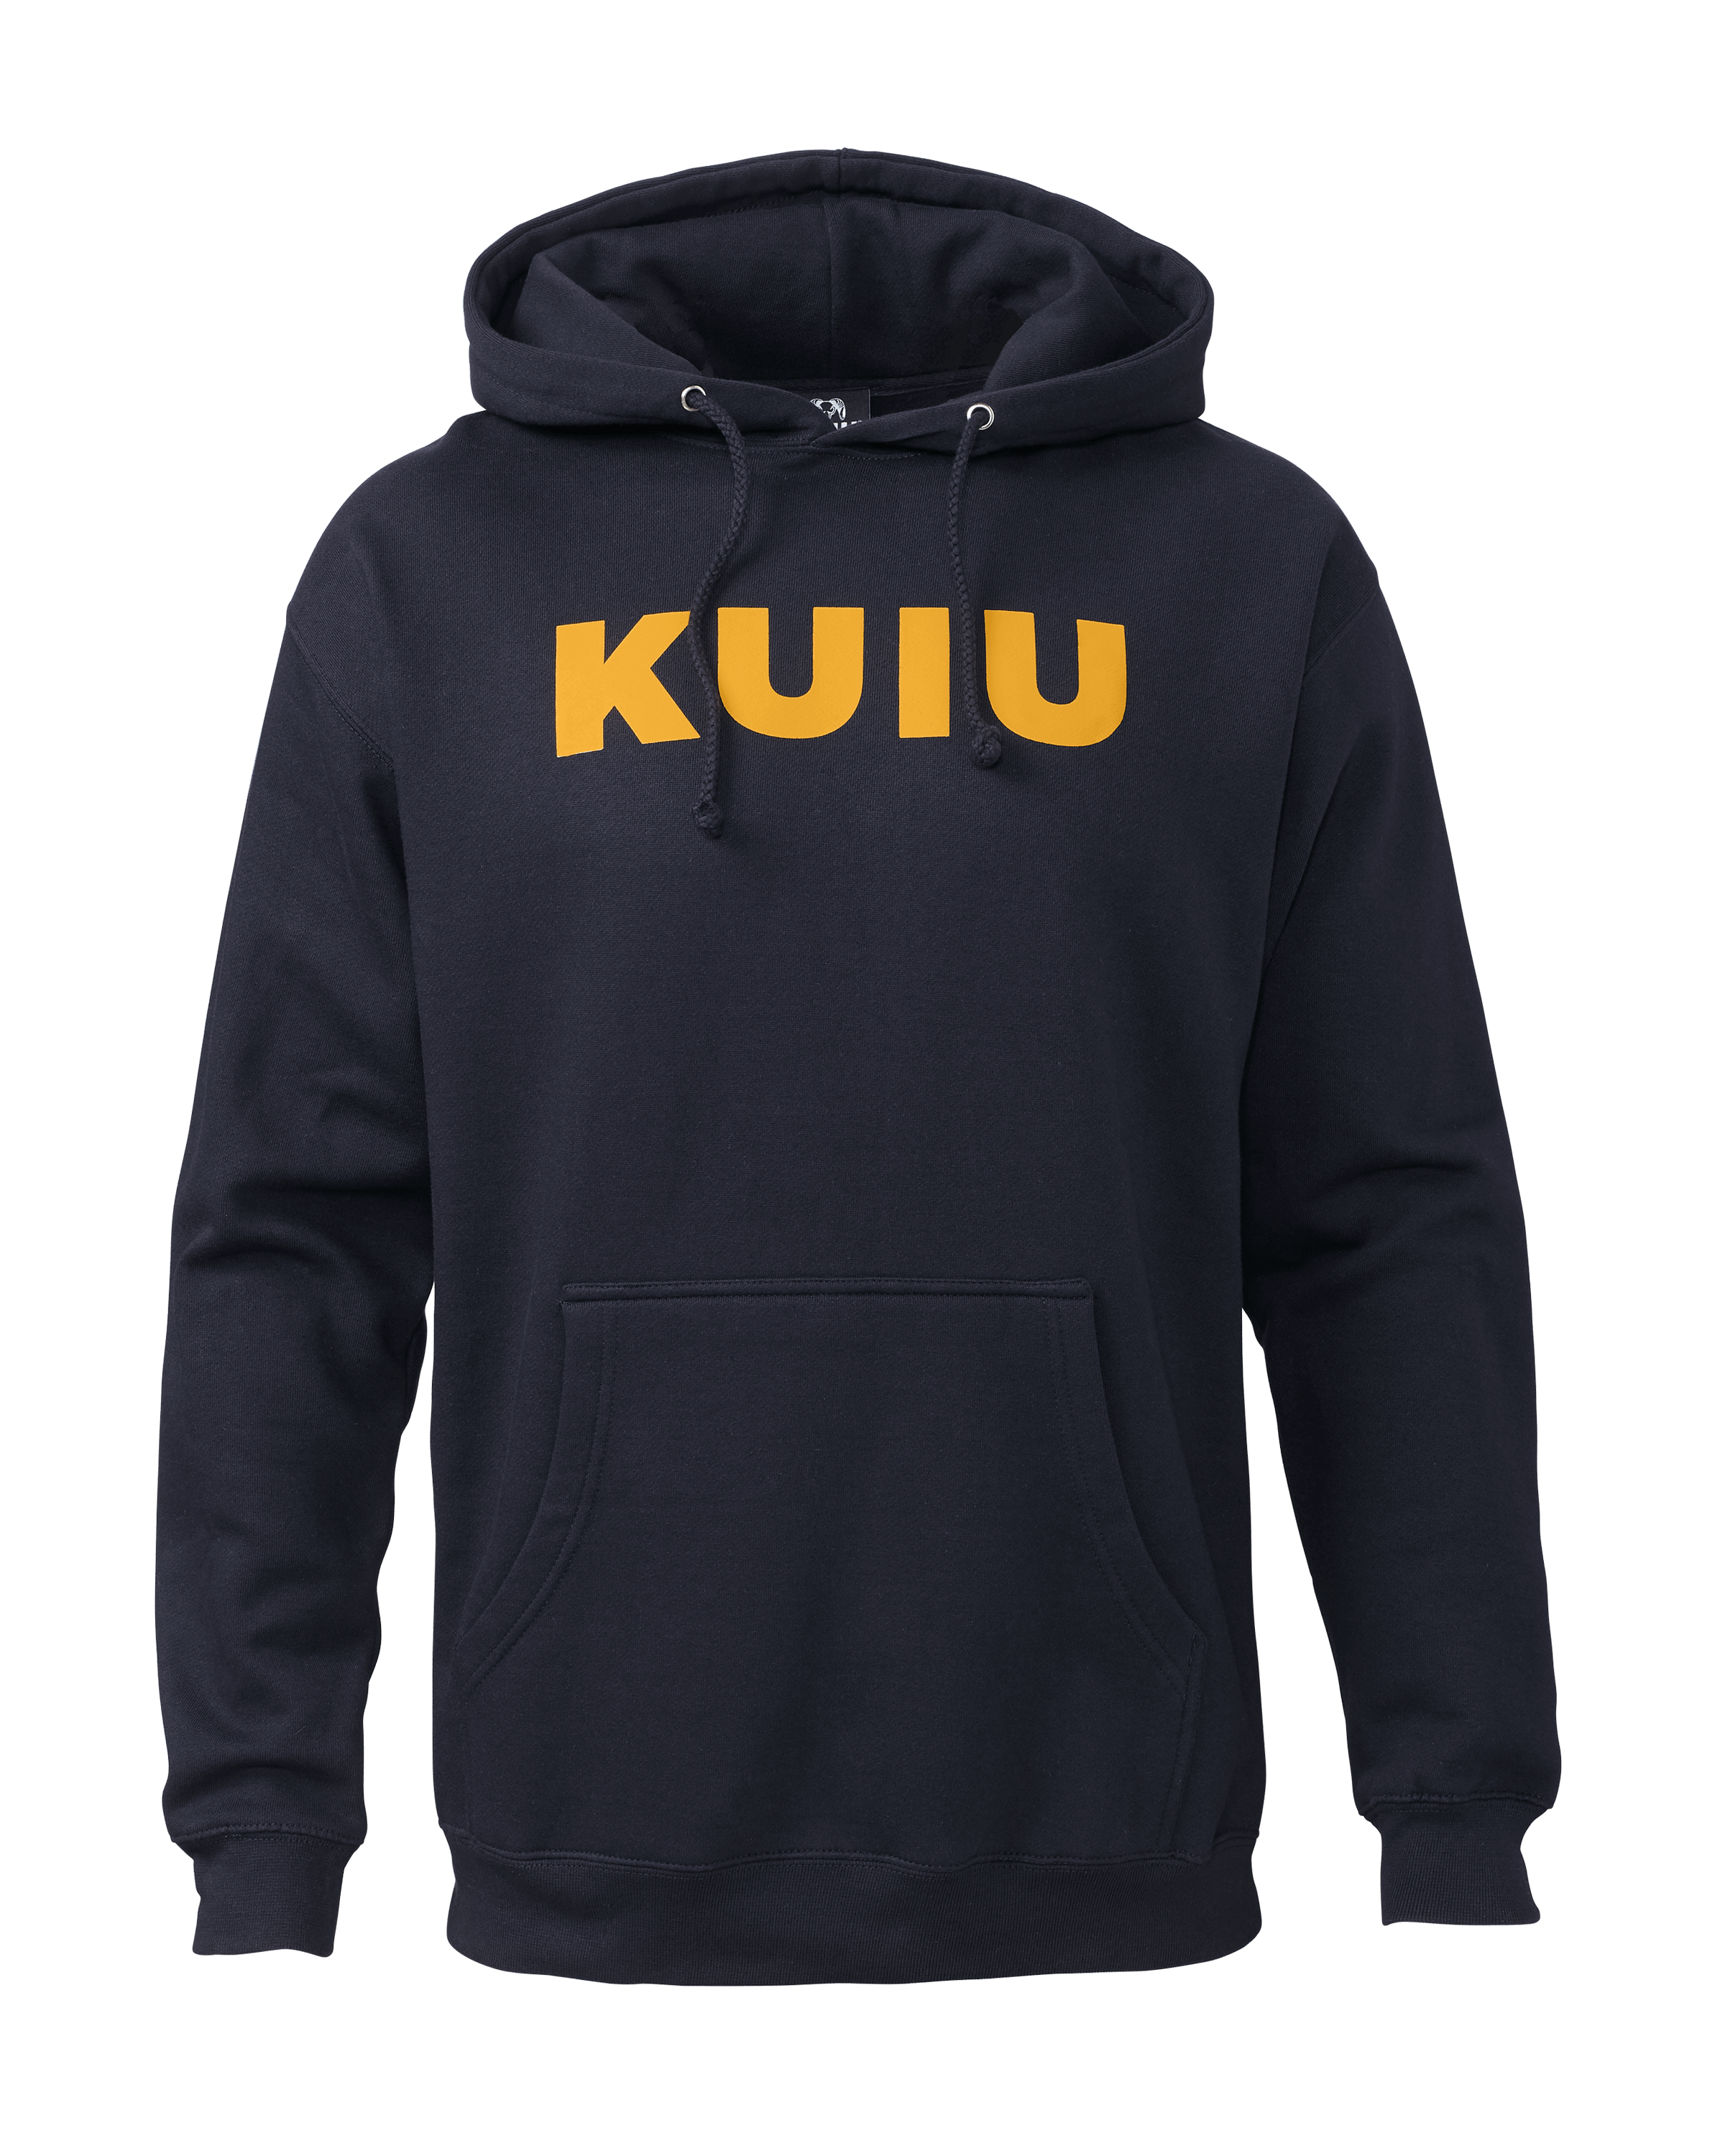 KUIU Outlet Ultralight Sleeve Logo Hunting Hoodie in Navy | Size Medium